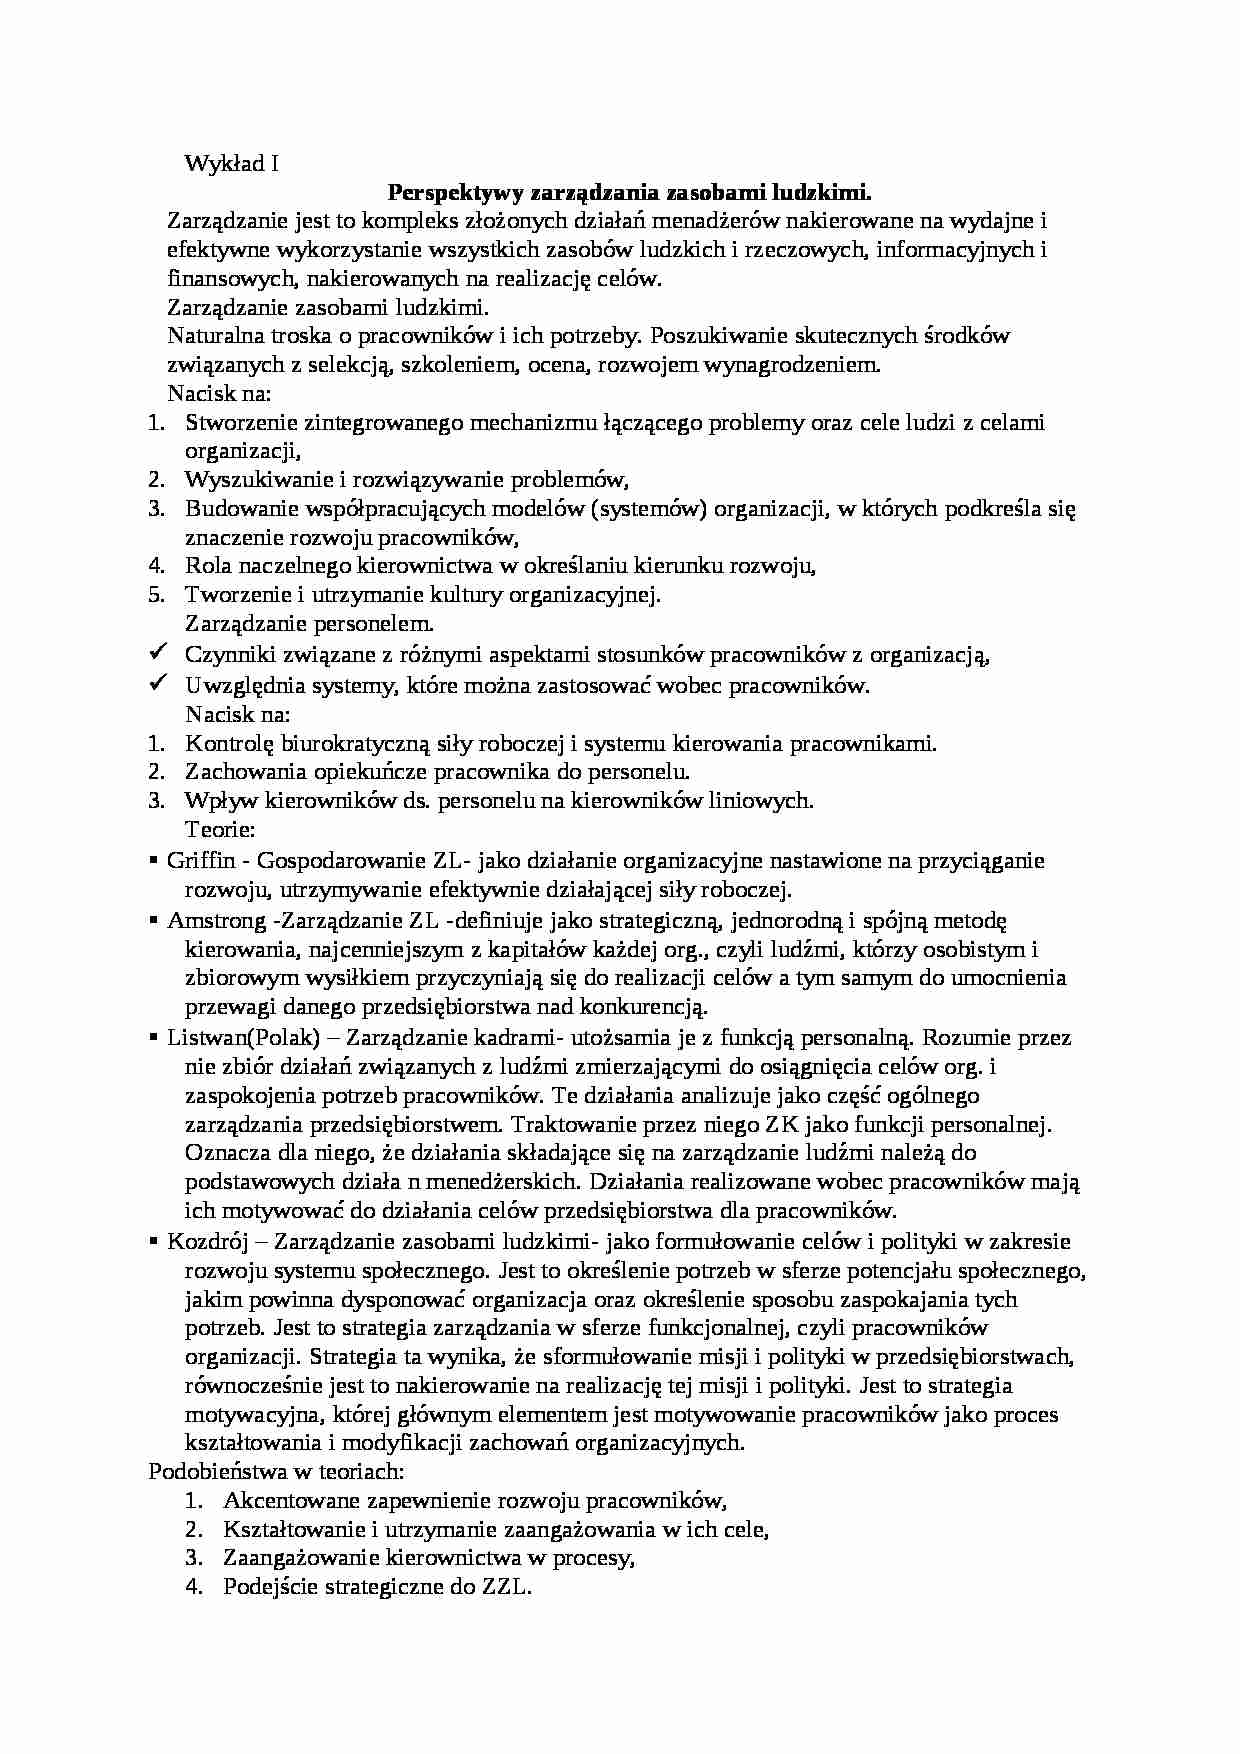 Zarządzanie kadrami - 12 wykładów - strona 1